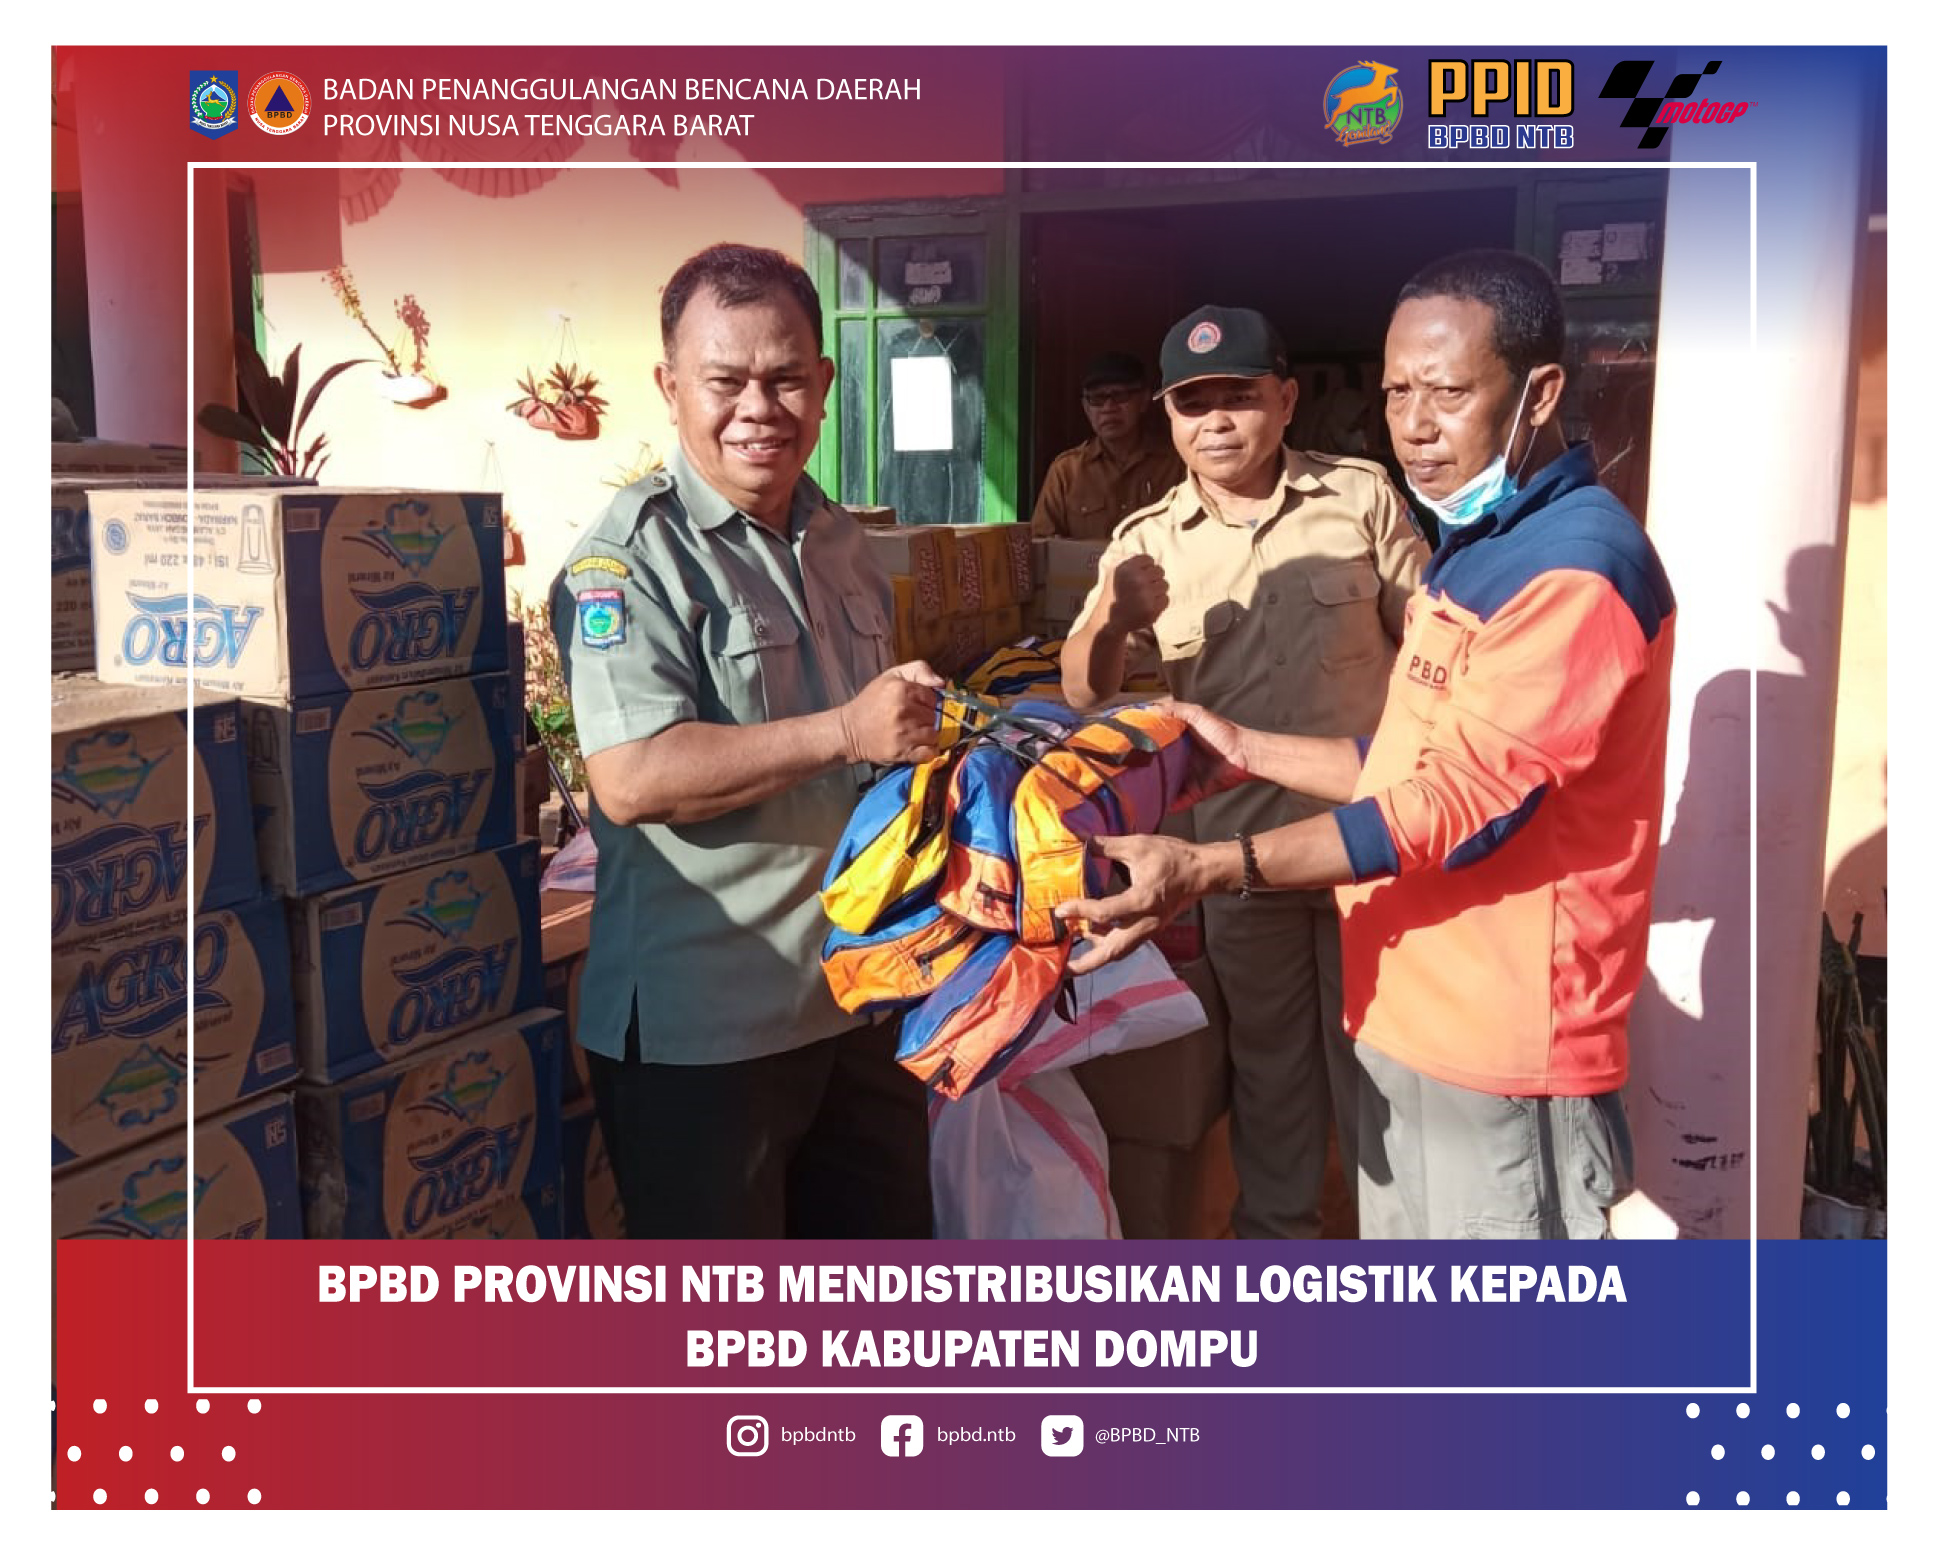 BPBD Provinsi NTB Mendistribusikan Bantuan Logistik Untuk Korban Bencana di Kabupaten Dompu (Senin, 20 Desember 2021)